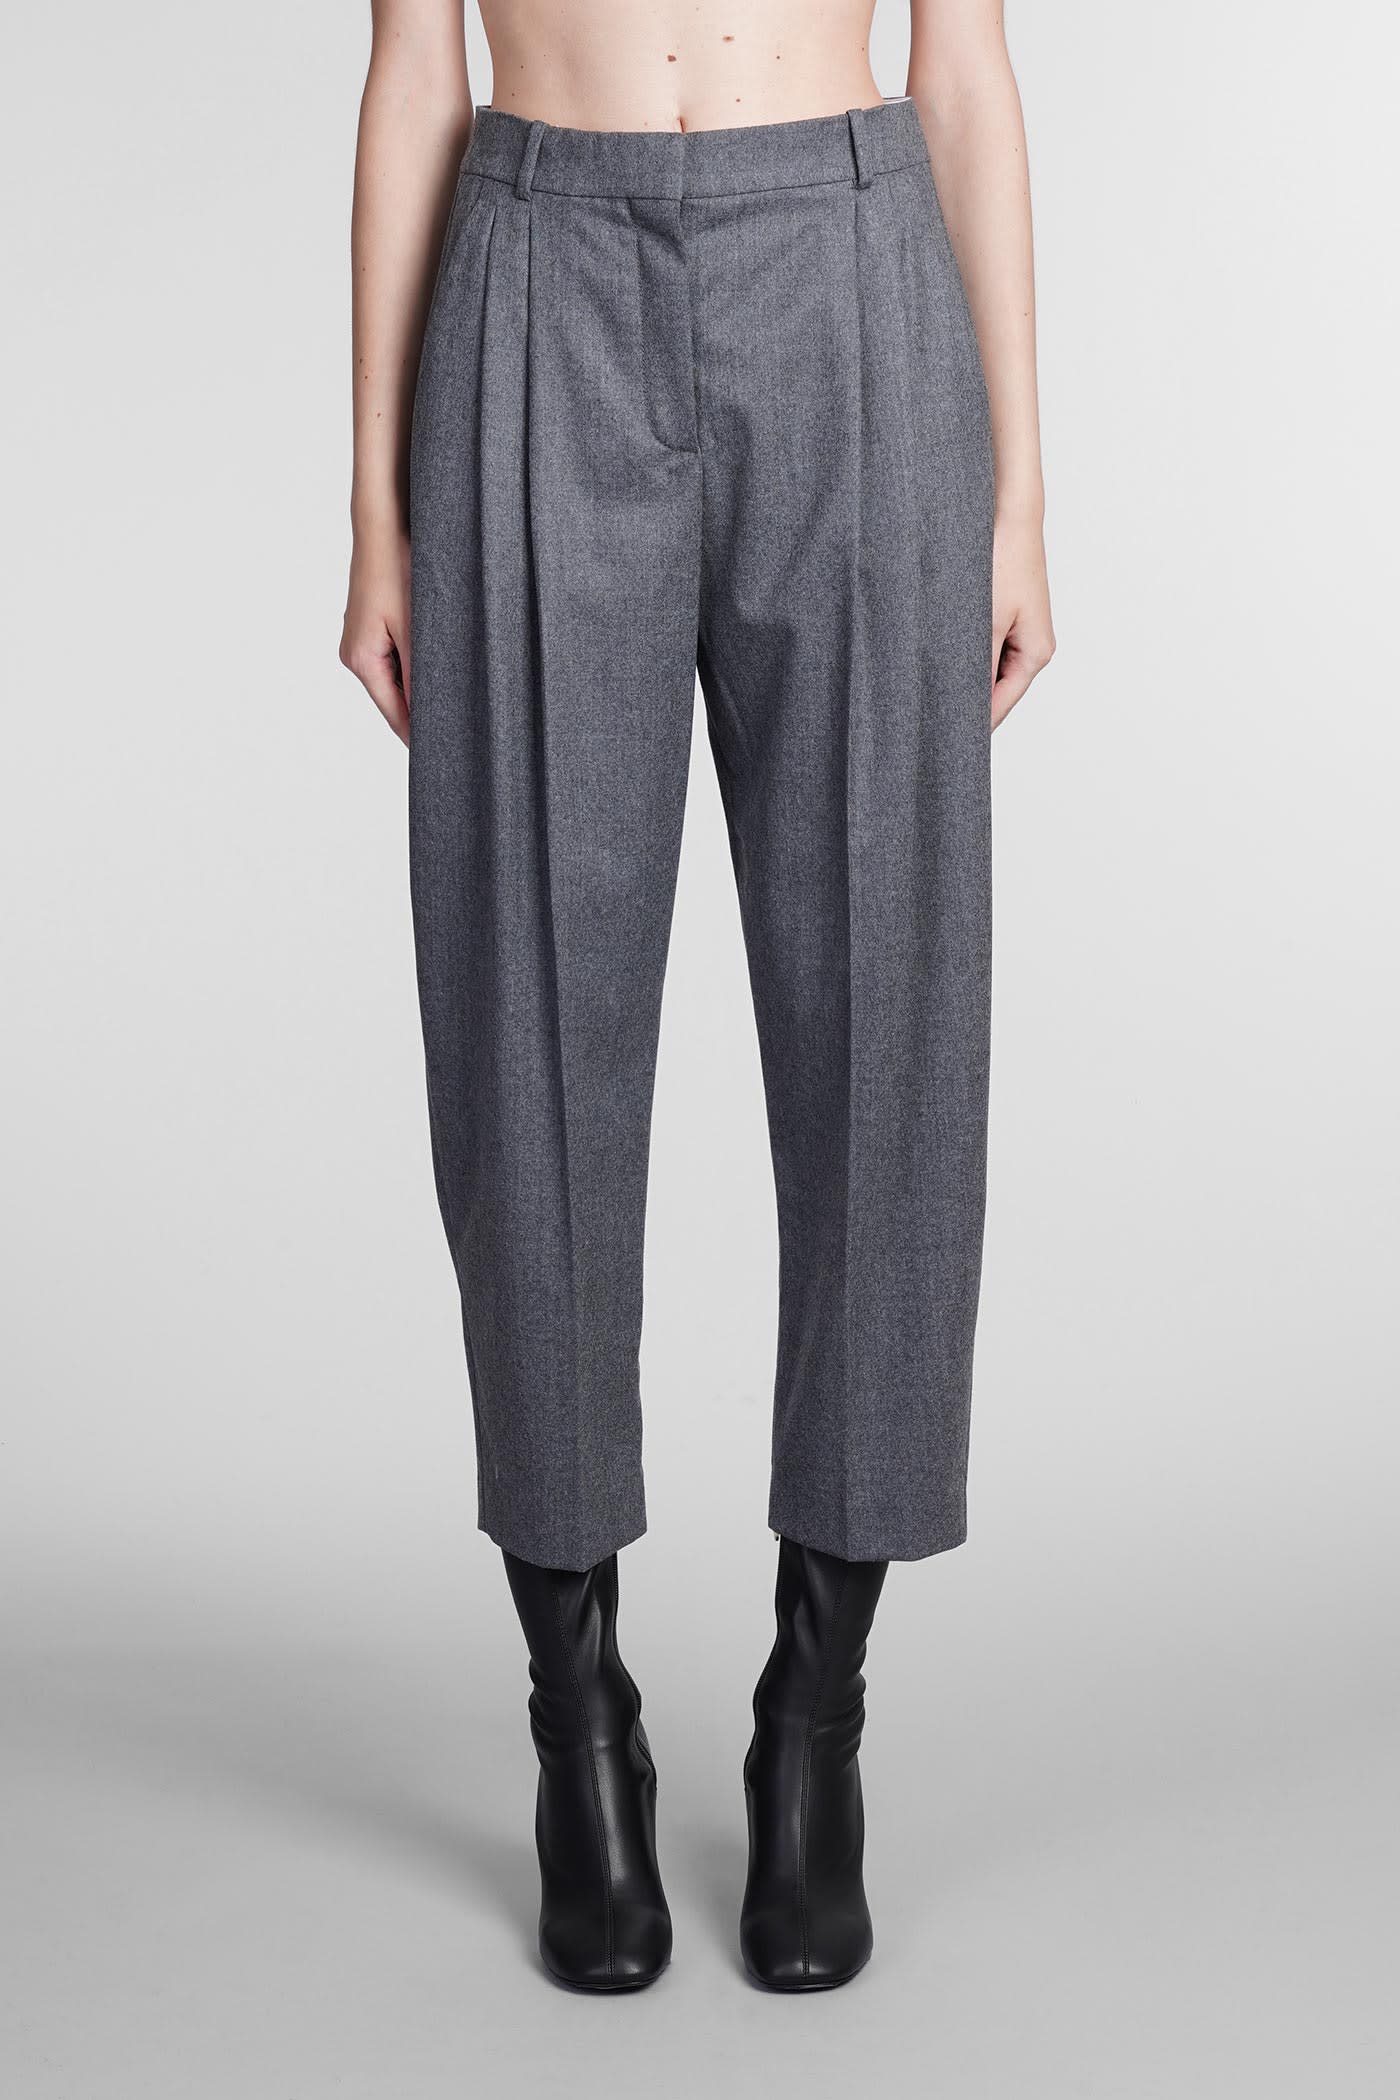 Stella Mccartney Dawson Pants In Grey Wool